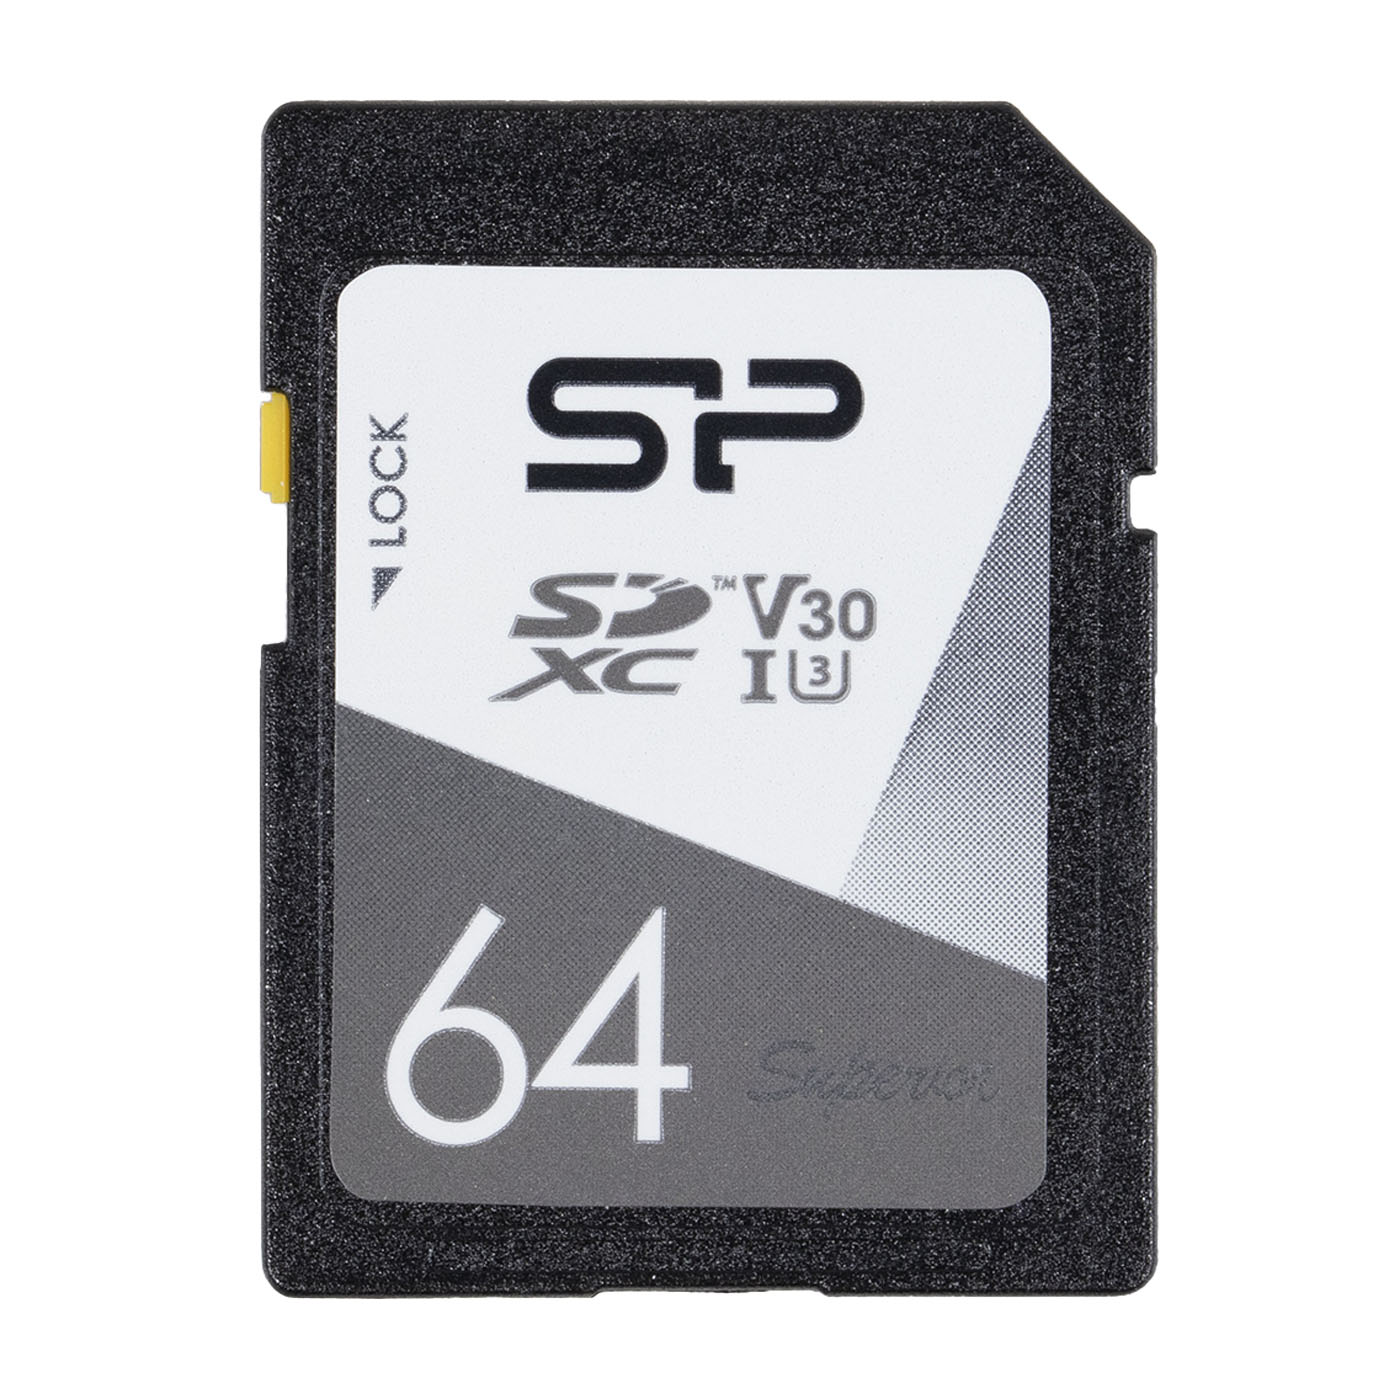 川宇 メモリリーダライタ   USB カードリーダー   メモリカードリーダー USB2.0 microSD   SDメモリカード   SDHC   SDXC   miniSDHC カードリーダー 等対応